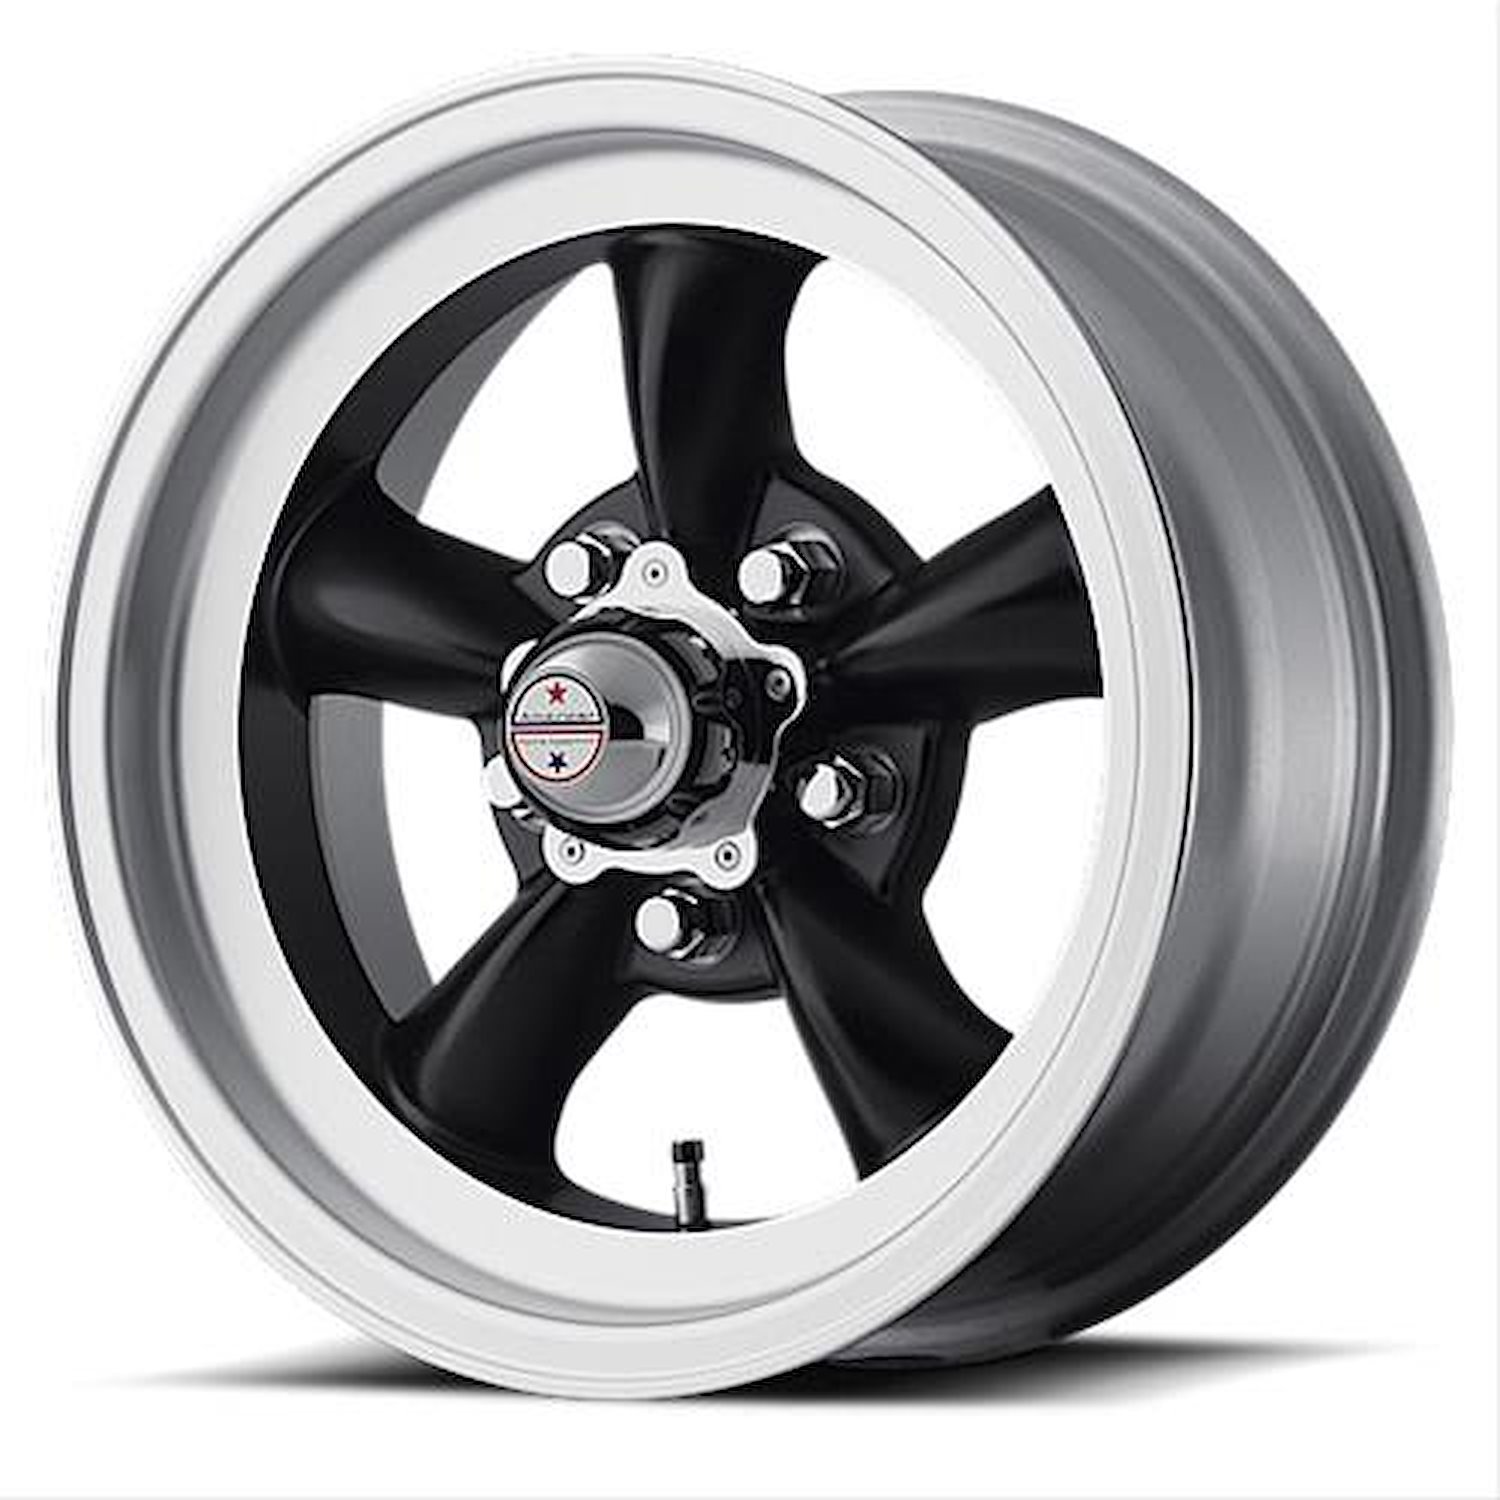 VN105D Series Torq-Thrust D Wheel Size: 15" x 8-1/2"